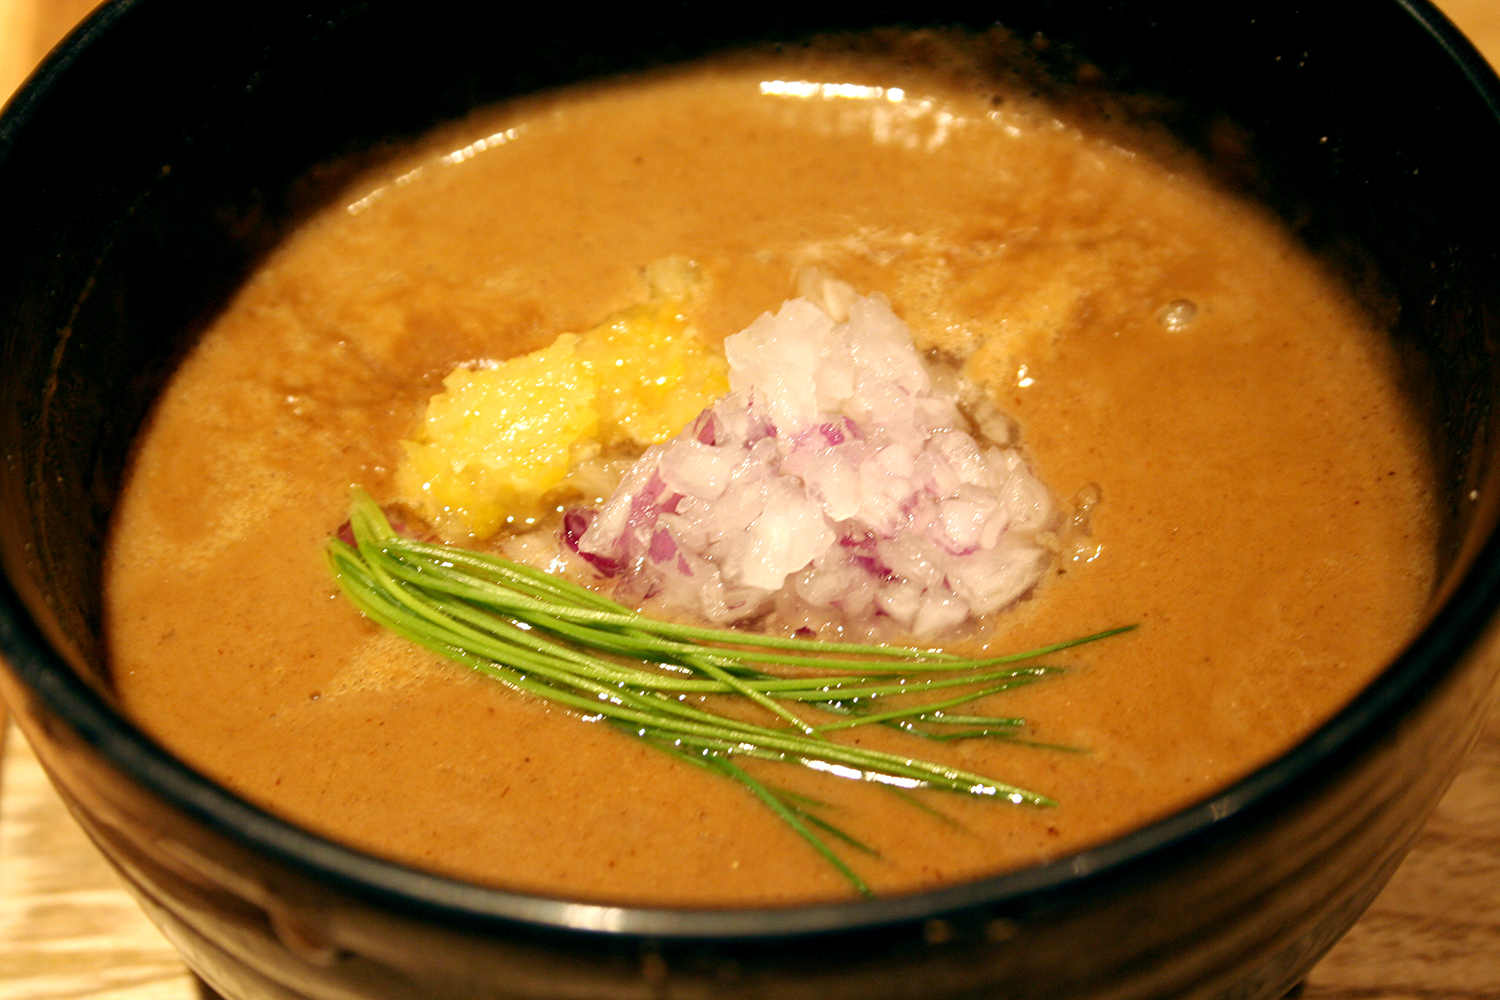 スープには赤玉ねぎ、芽ネギ、ゆず。彩りが美しく、ビジュアルに和食のセンスが垣間見える。